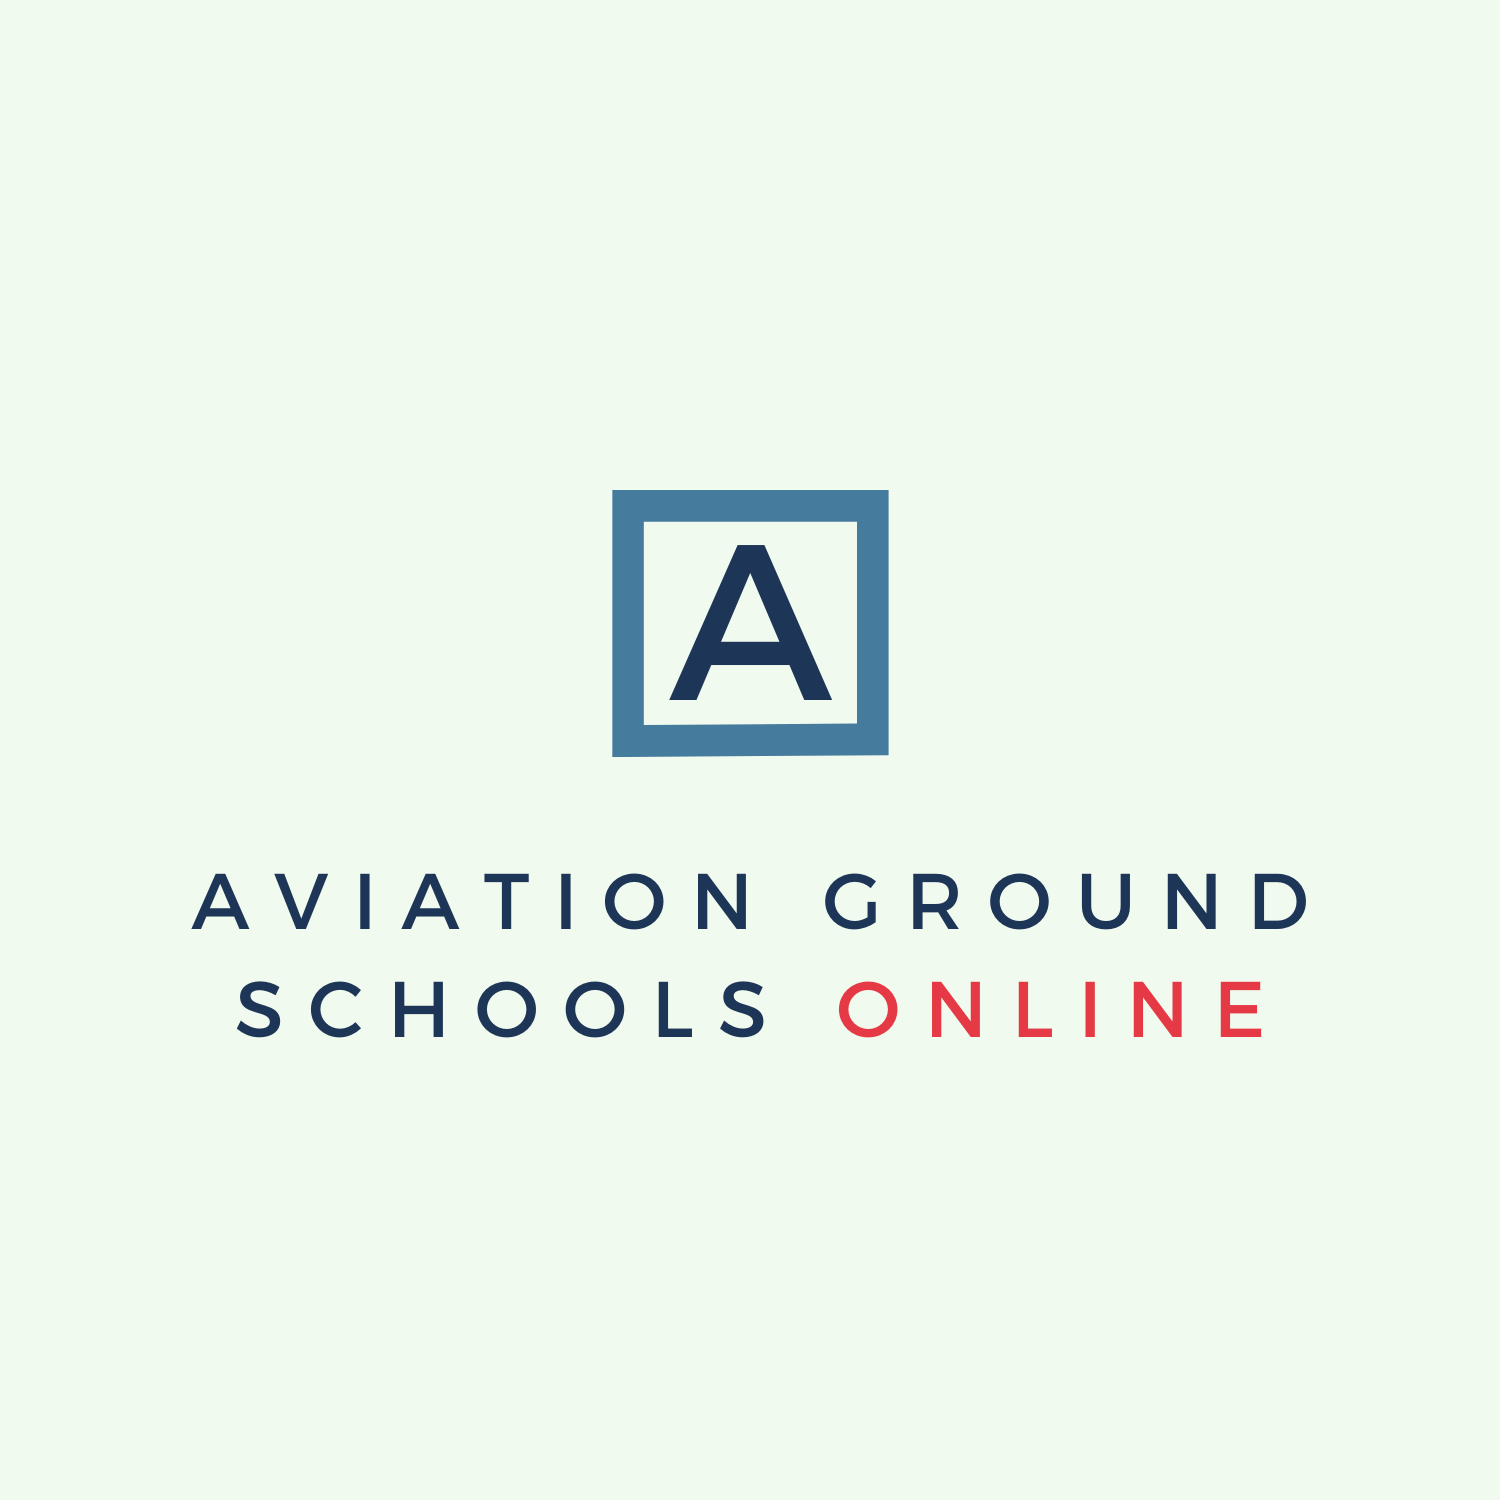 (c) Aviationgroundschoolsonline.com